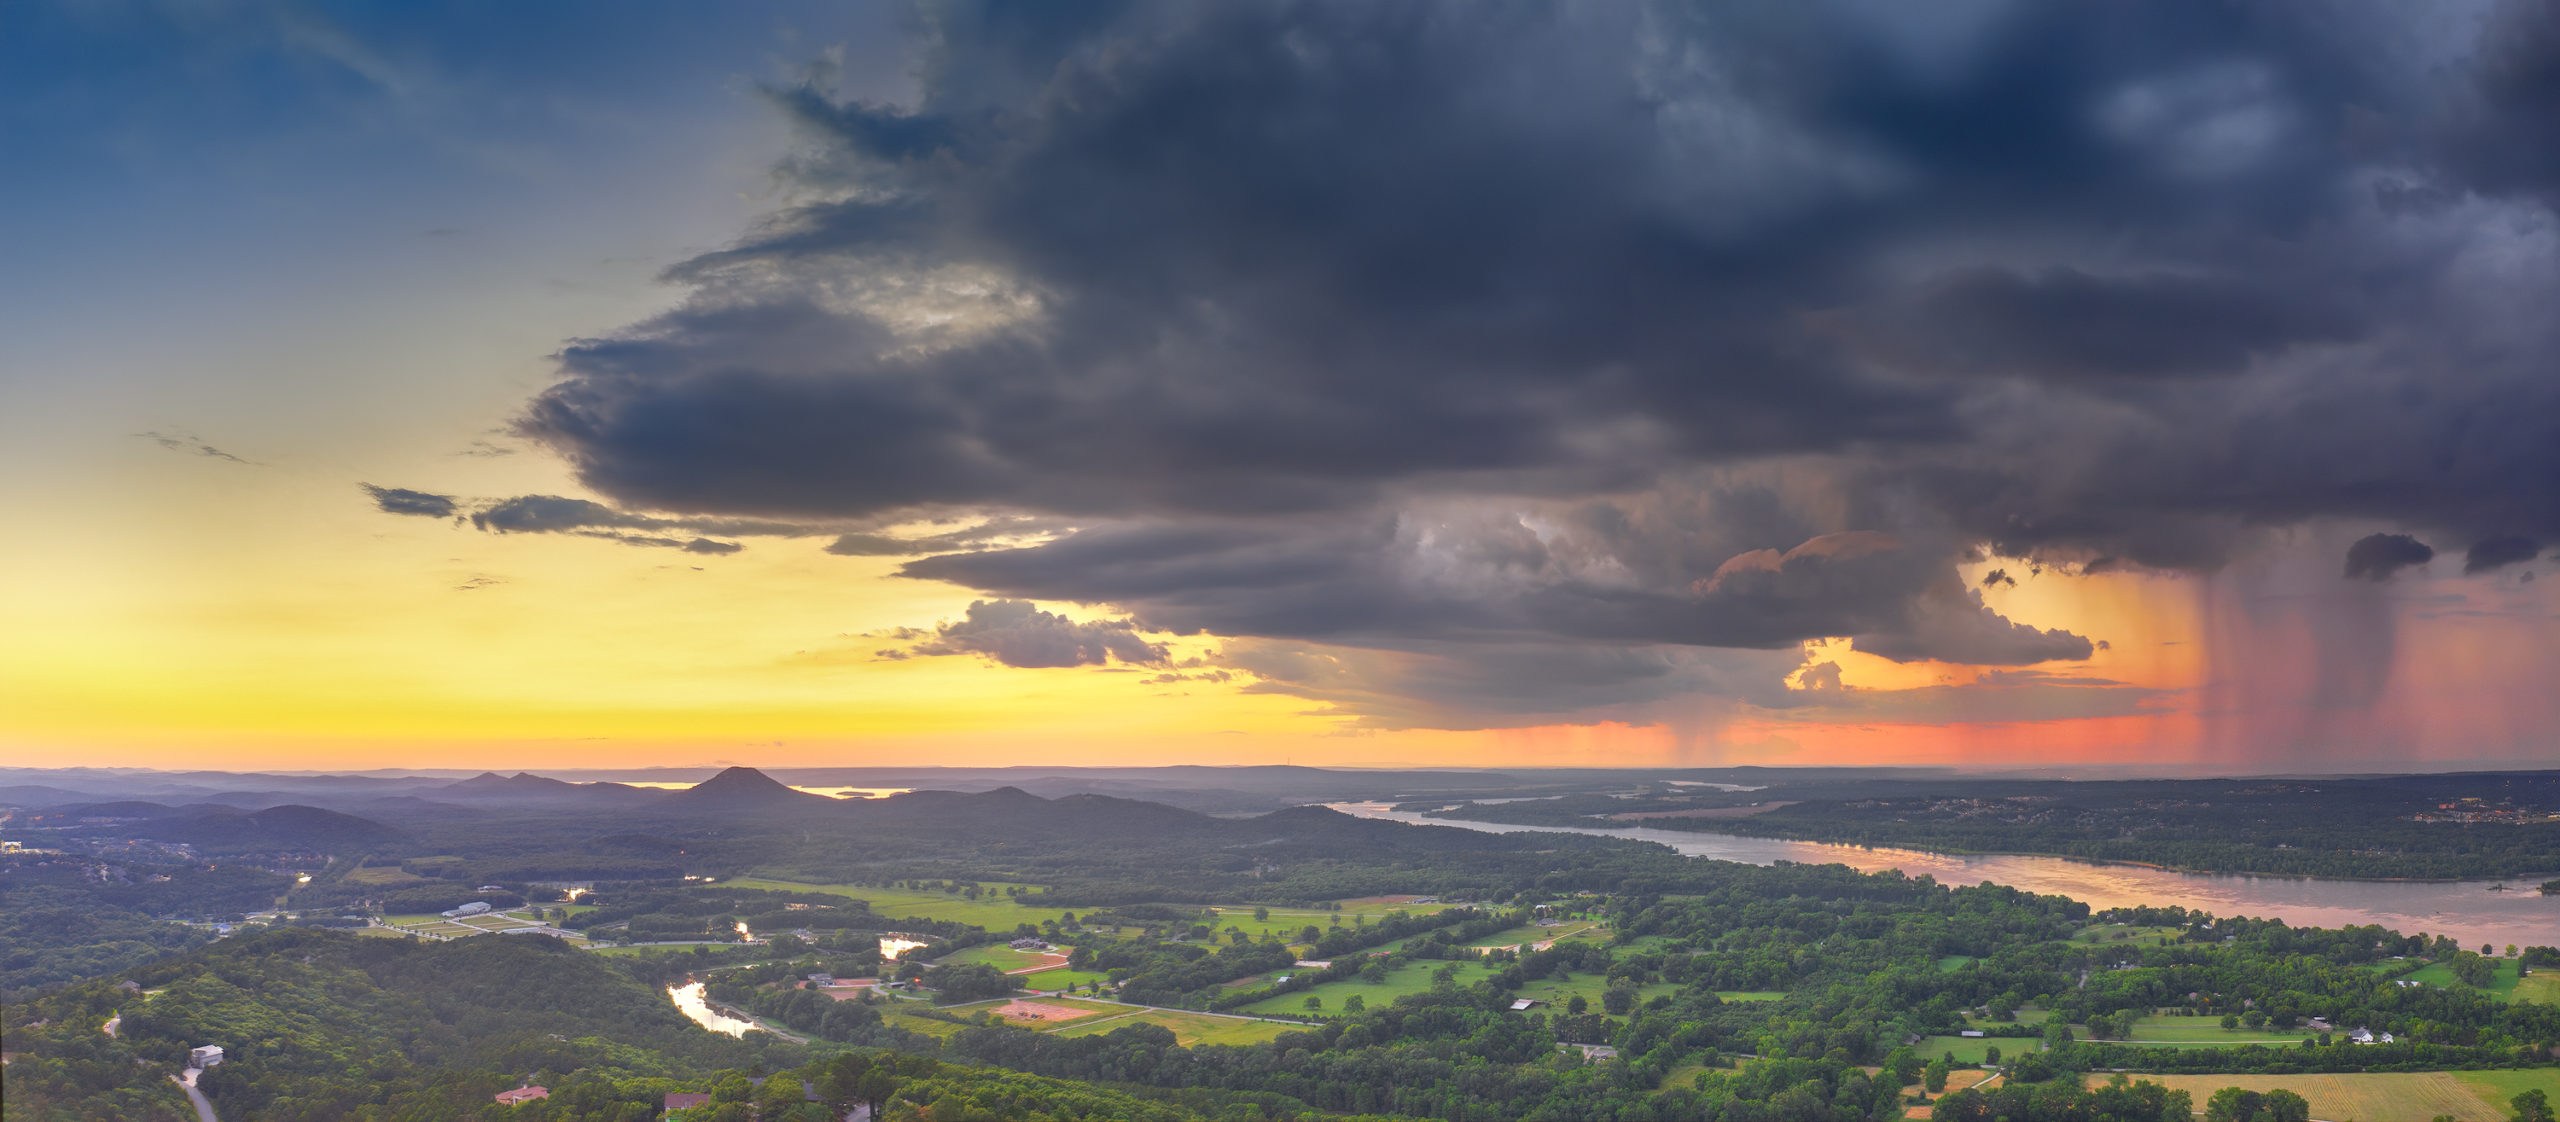 Stormy Sunset over Pinnacle Mountain Little Rock Arkansas